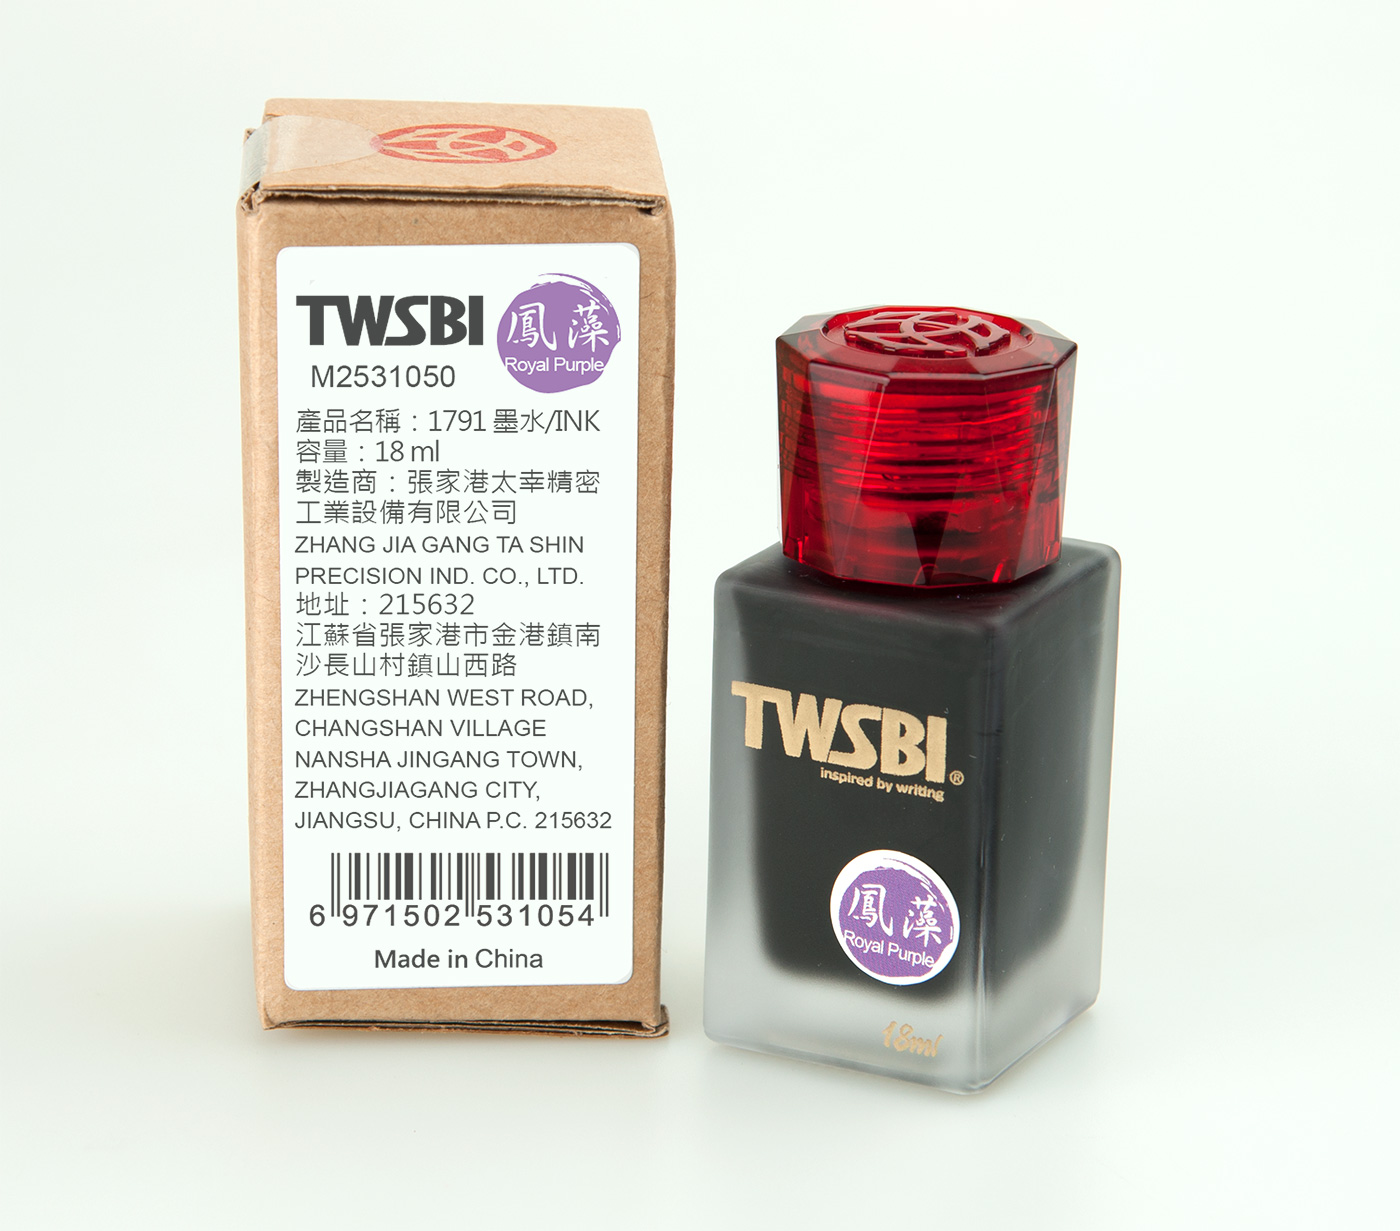 TWSBI 1791 Royal Purple 18ml 